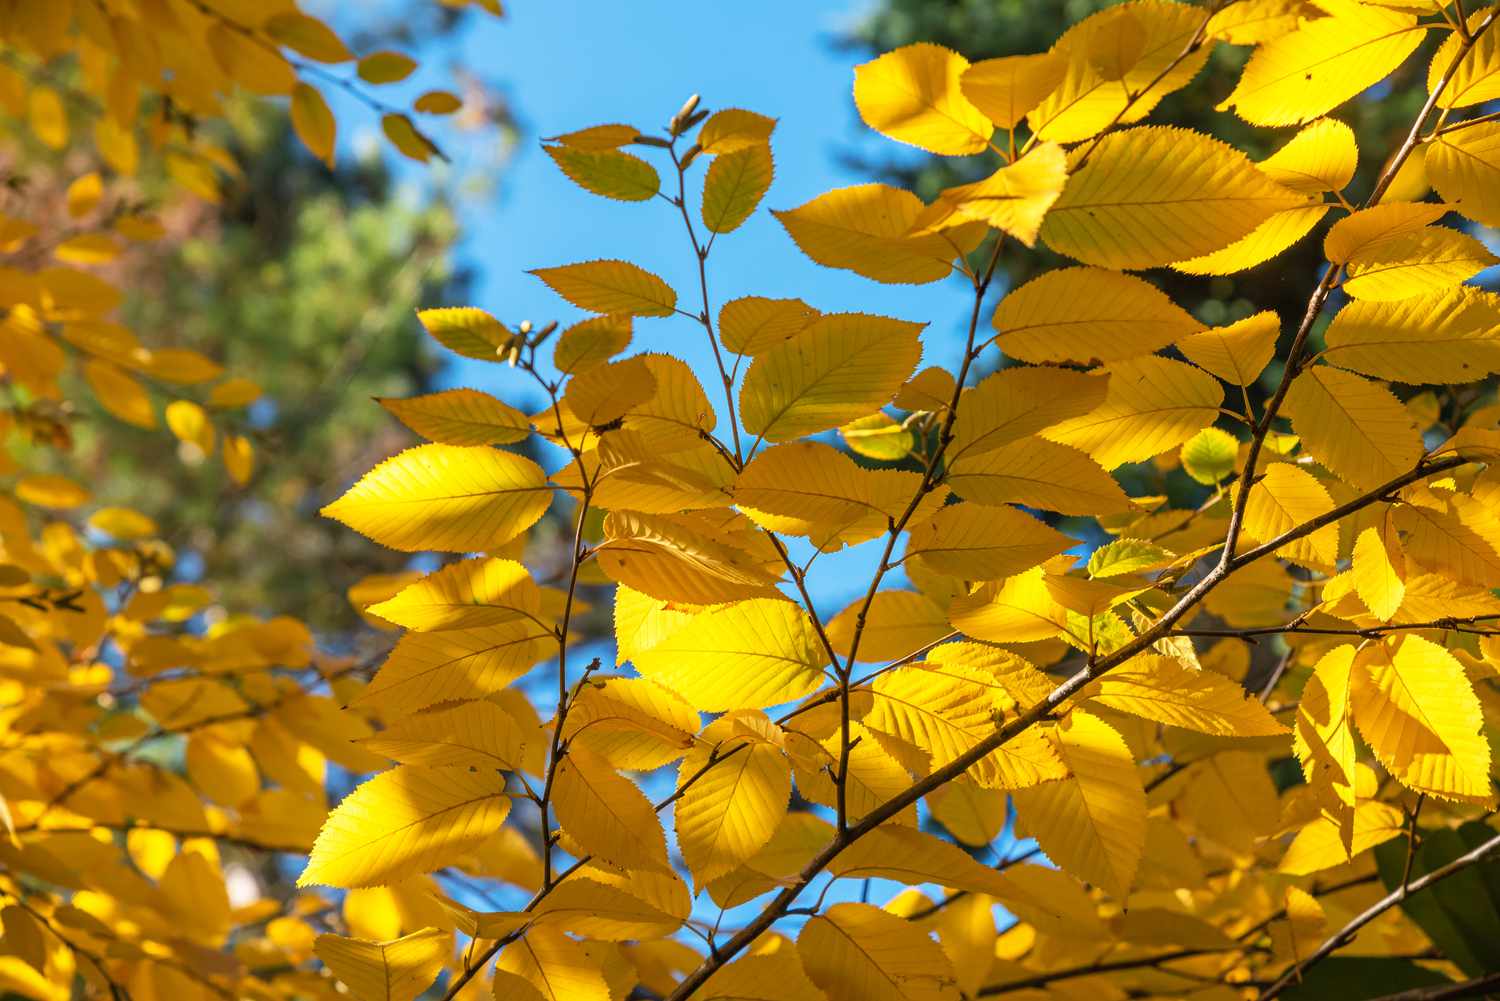 Gelber Birkenzweig mit gelben kreisförmigen Blättern in Nahaufnahme